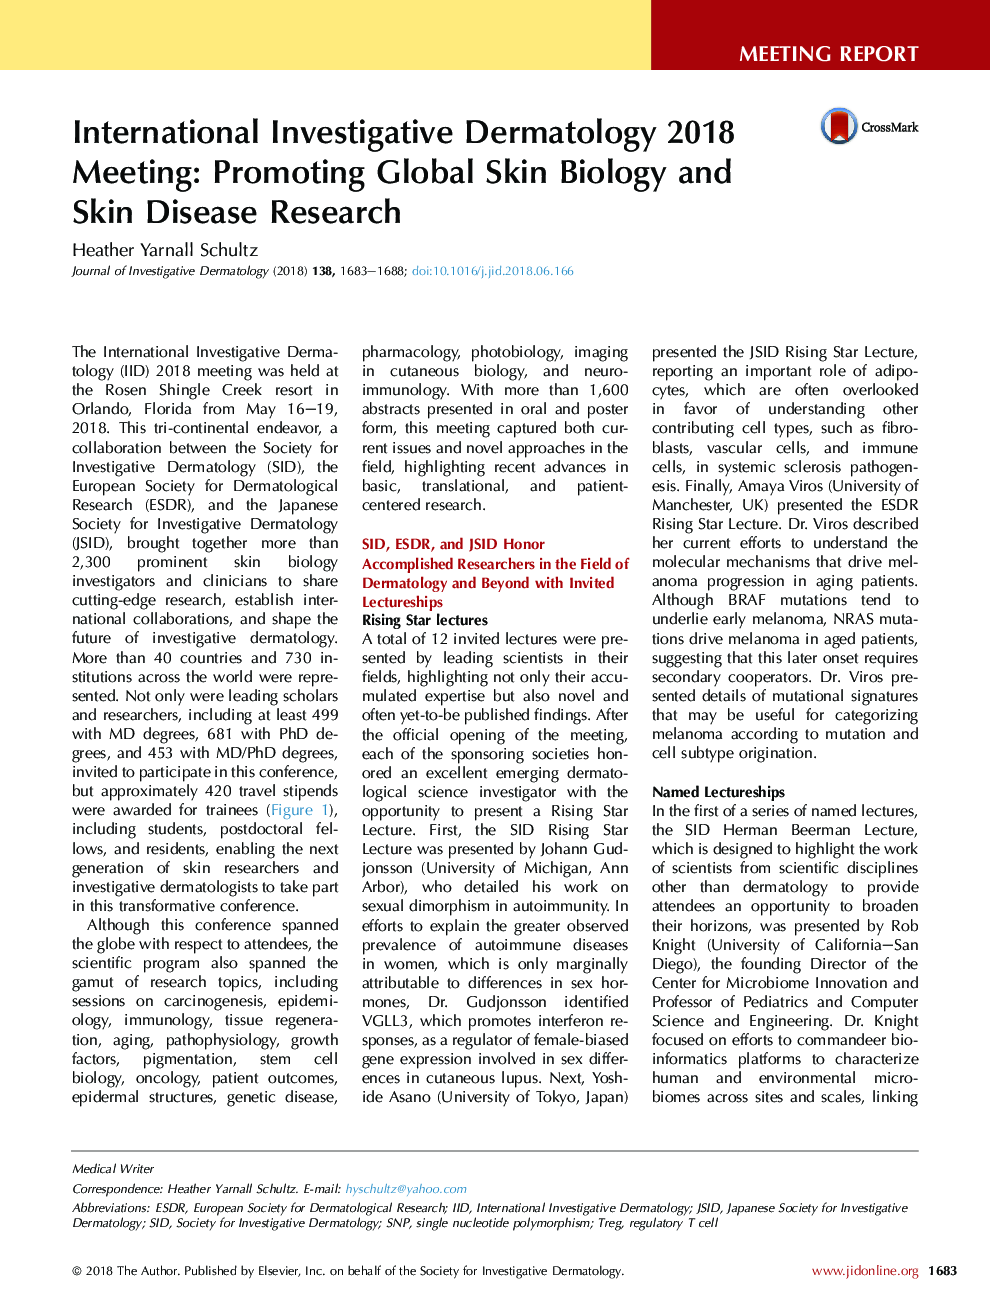 نشست بین المللی پوست و موی بین المللی 2018: ترویج زیست شناسی جهانی پوست و تحقیقات بیماری پوست 